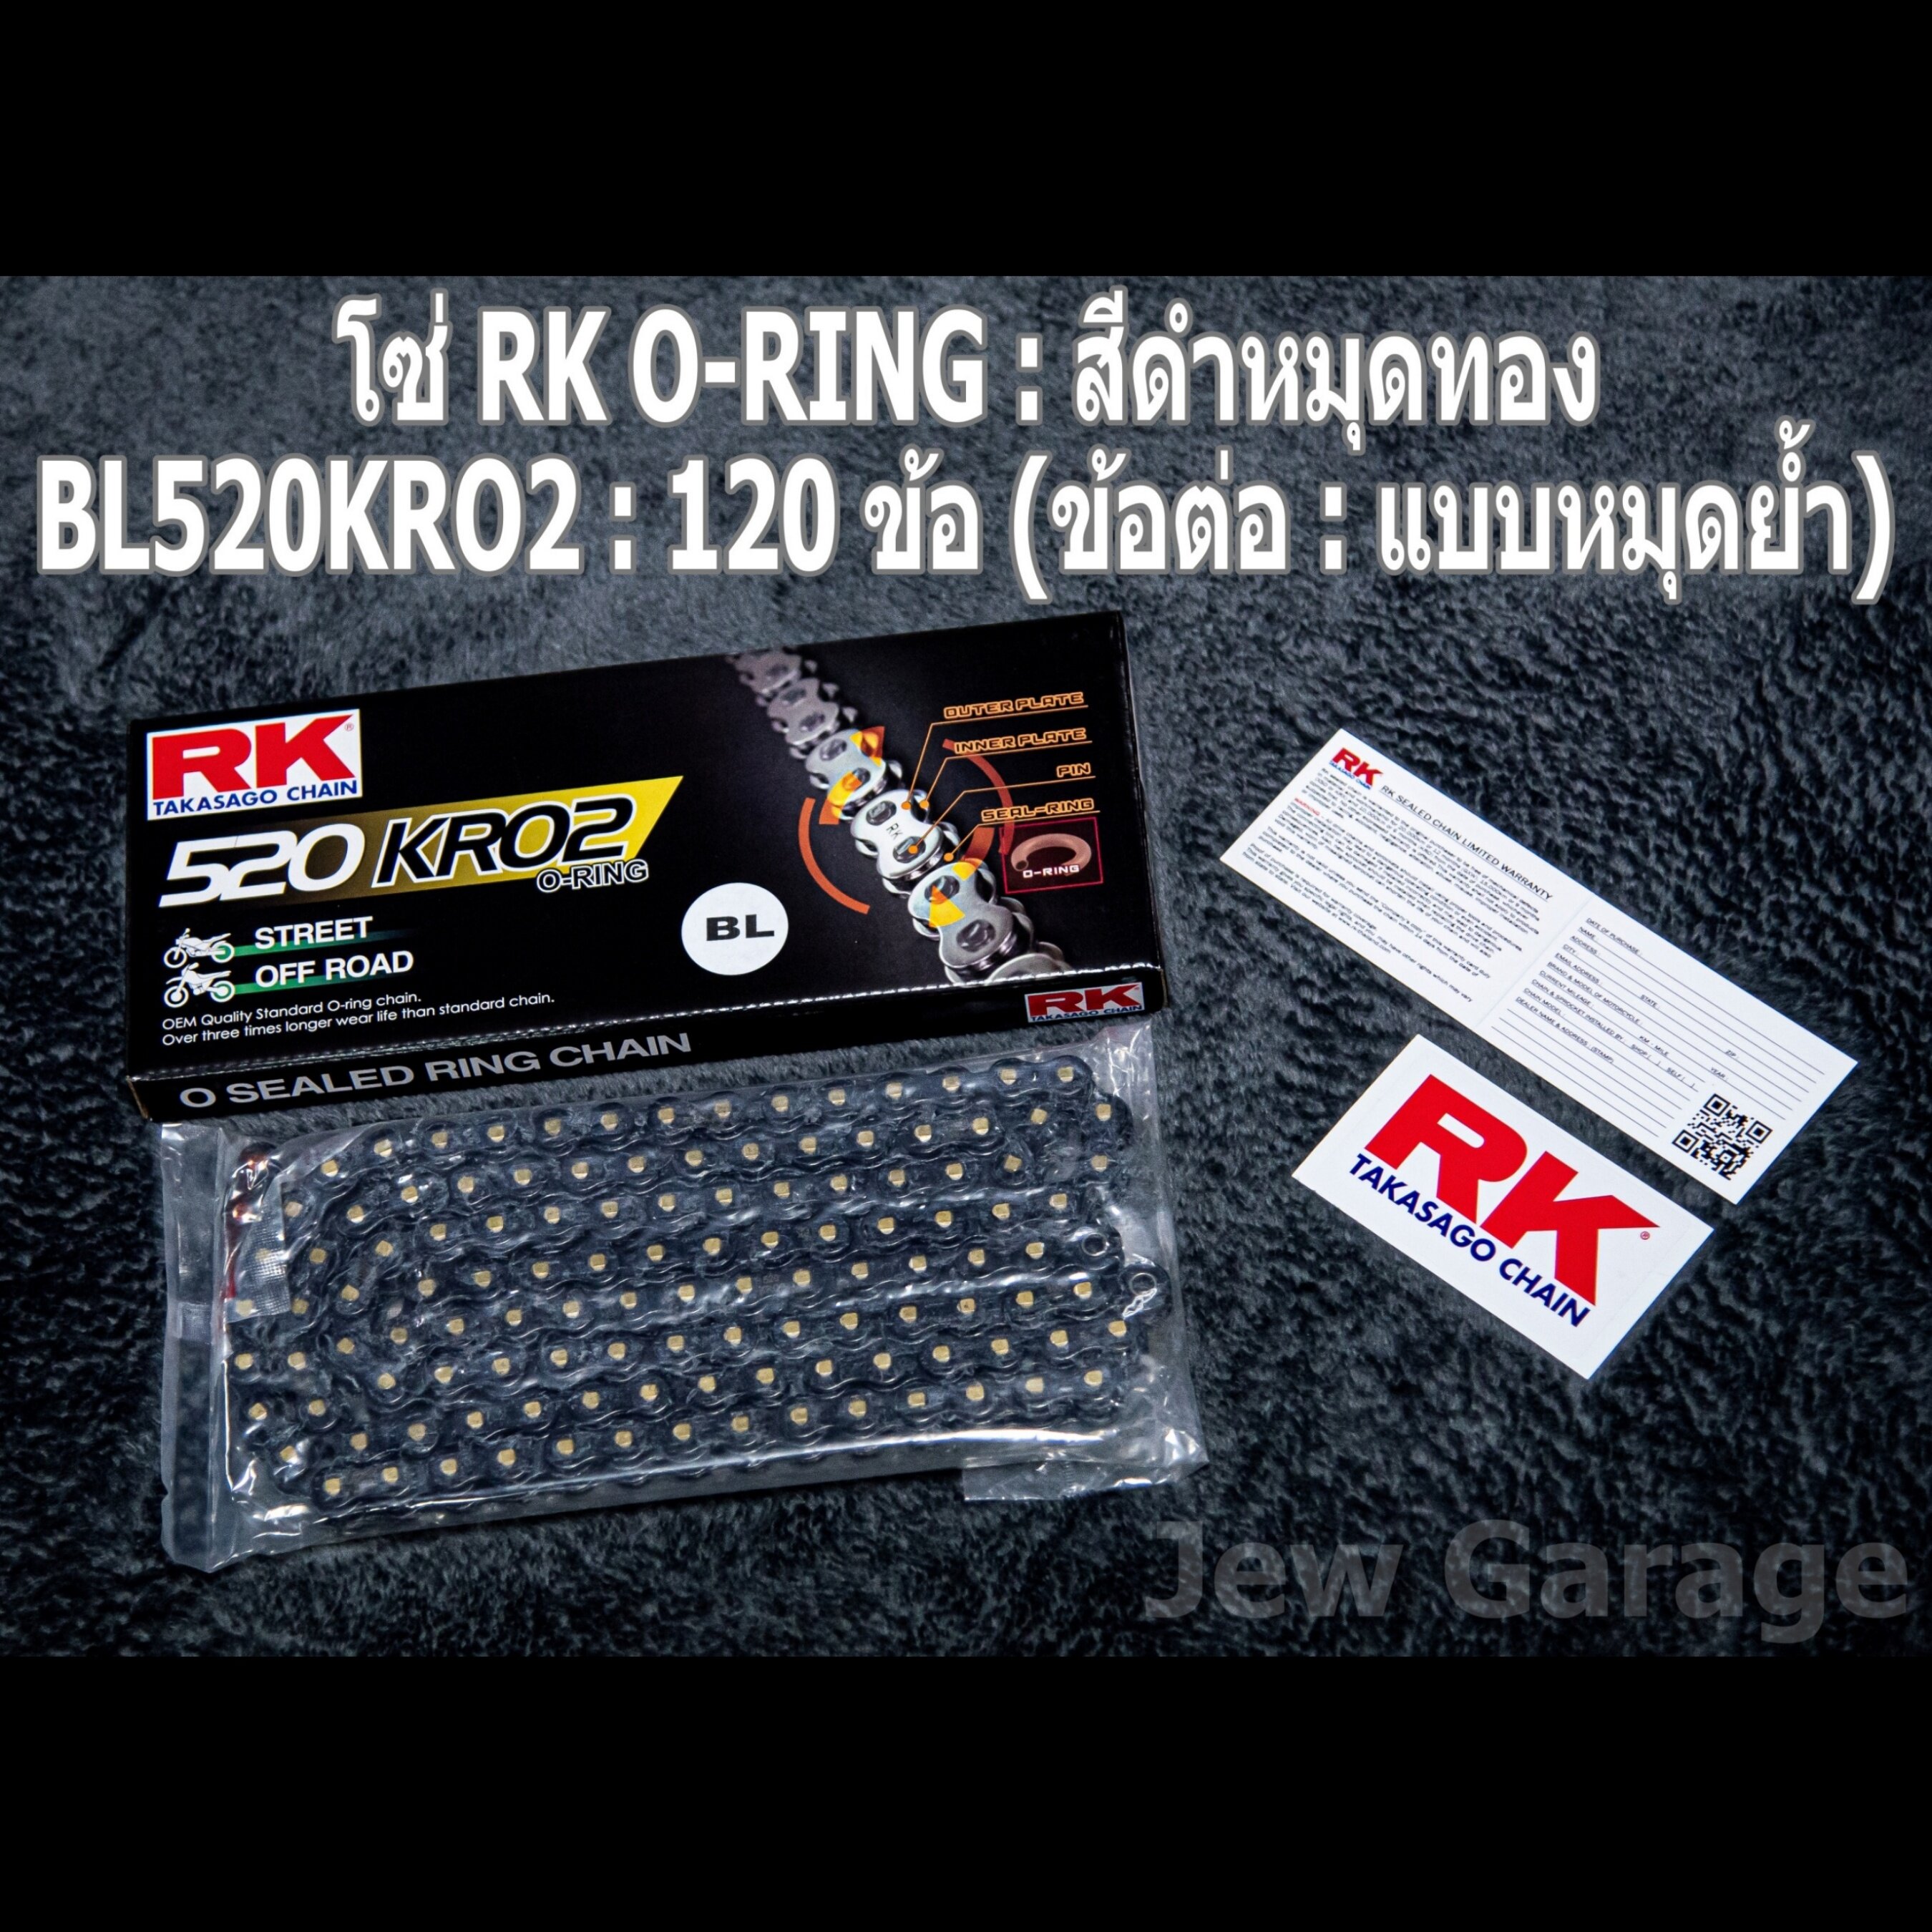 ชุดโซ่สเตอร์ RK  : โซ่ RK 520 O-RING สีเหล็ก สีทอง สีดำหมุดทอง และ สเตอร์ RK หน้า + สเตอร์หลัง ขนาด 15/43 สำหรับรถ HONDA : CB500F ,CBR500R ,CB500X ,CBR500R ,CB500  ตัวเลือกสีโซ่ สเตอร์ RK 15/43 + โซ่ RK O-RING สีดำหมุดทอง